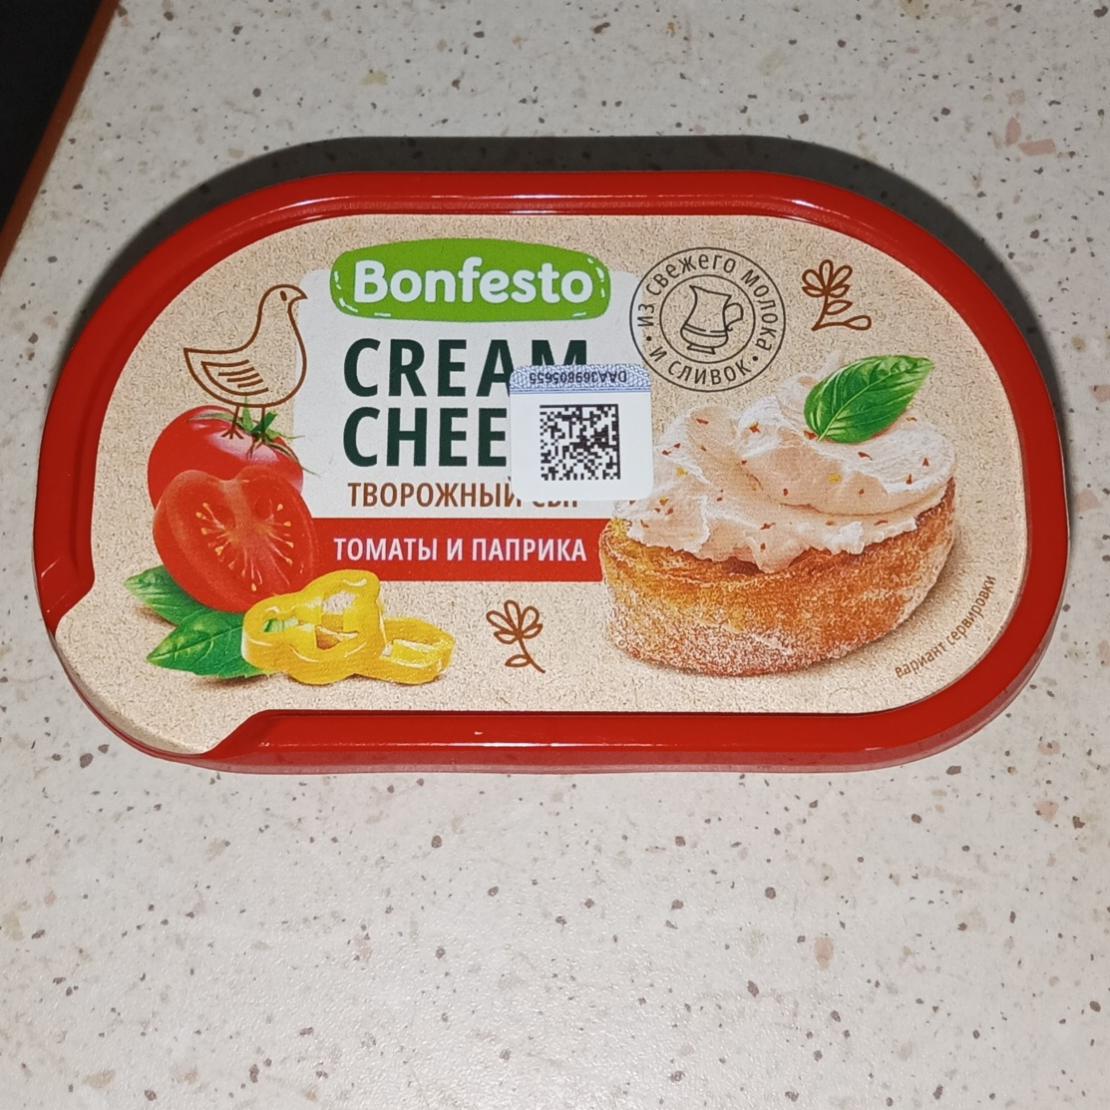 Фото - сыр мягкий творожный вяленые томаты Cremolle Бонфесто Bonfesto